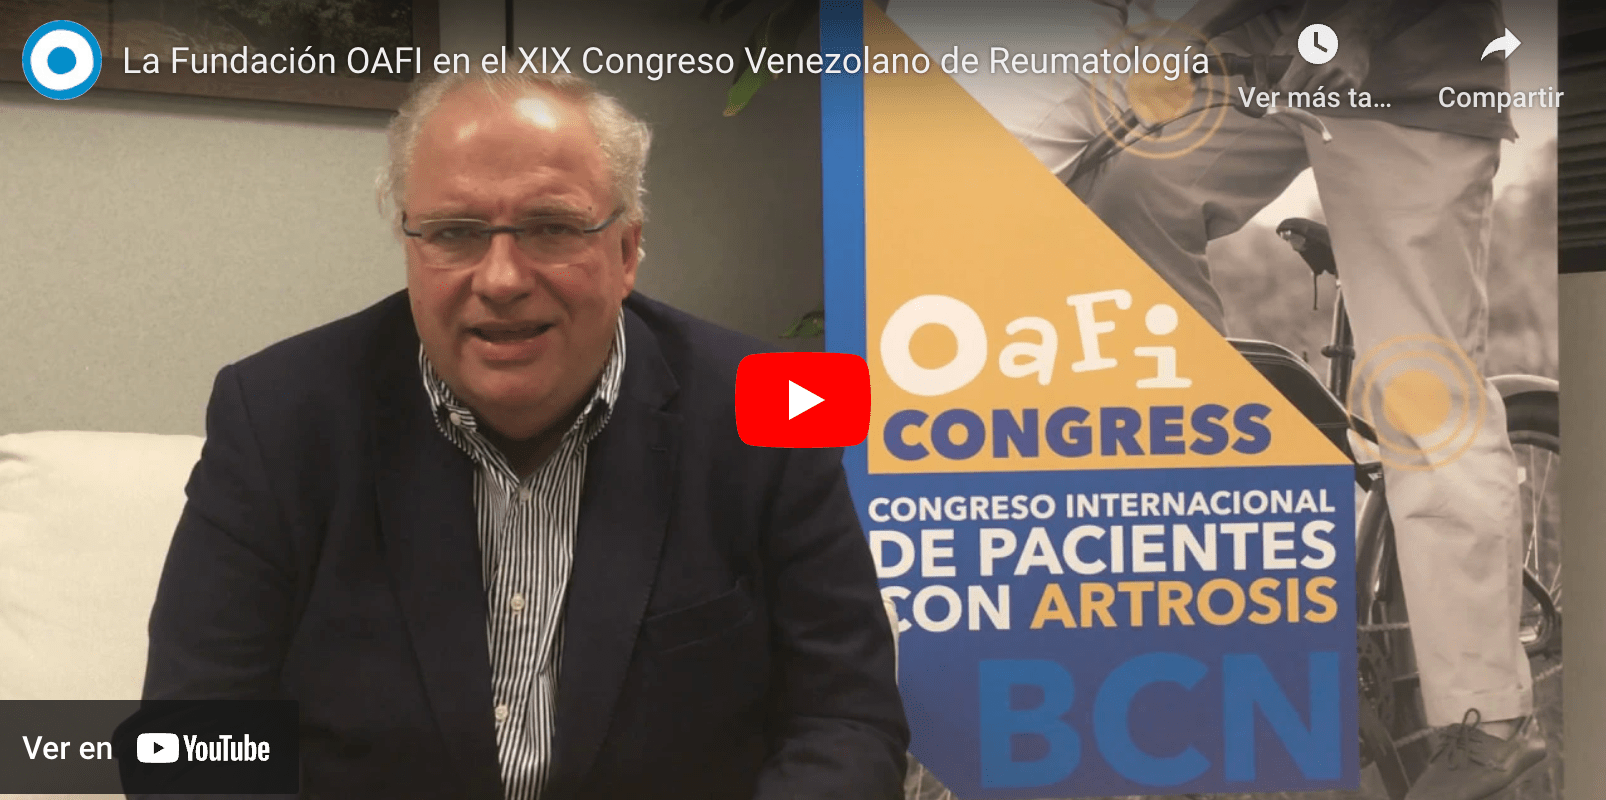 OAFI en el XIX Congreso Venezolano de Reumatología